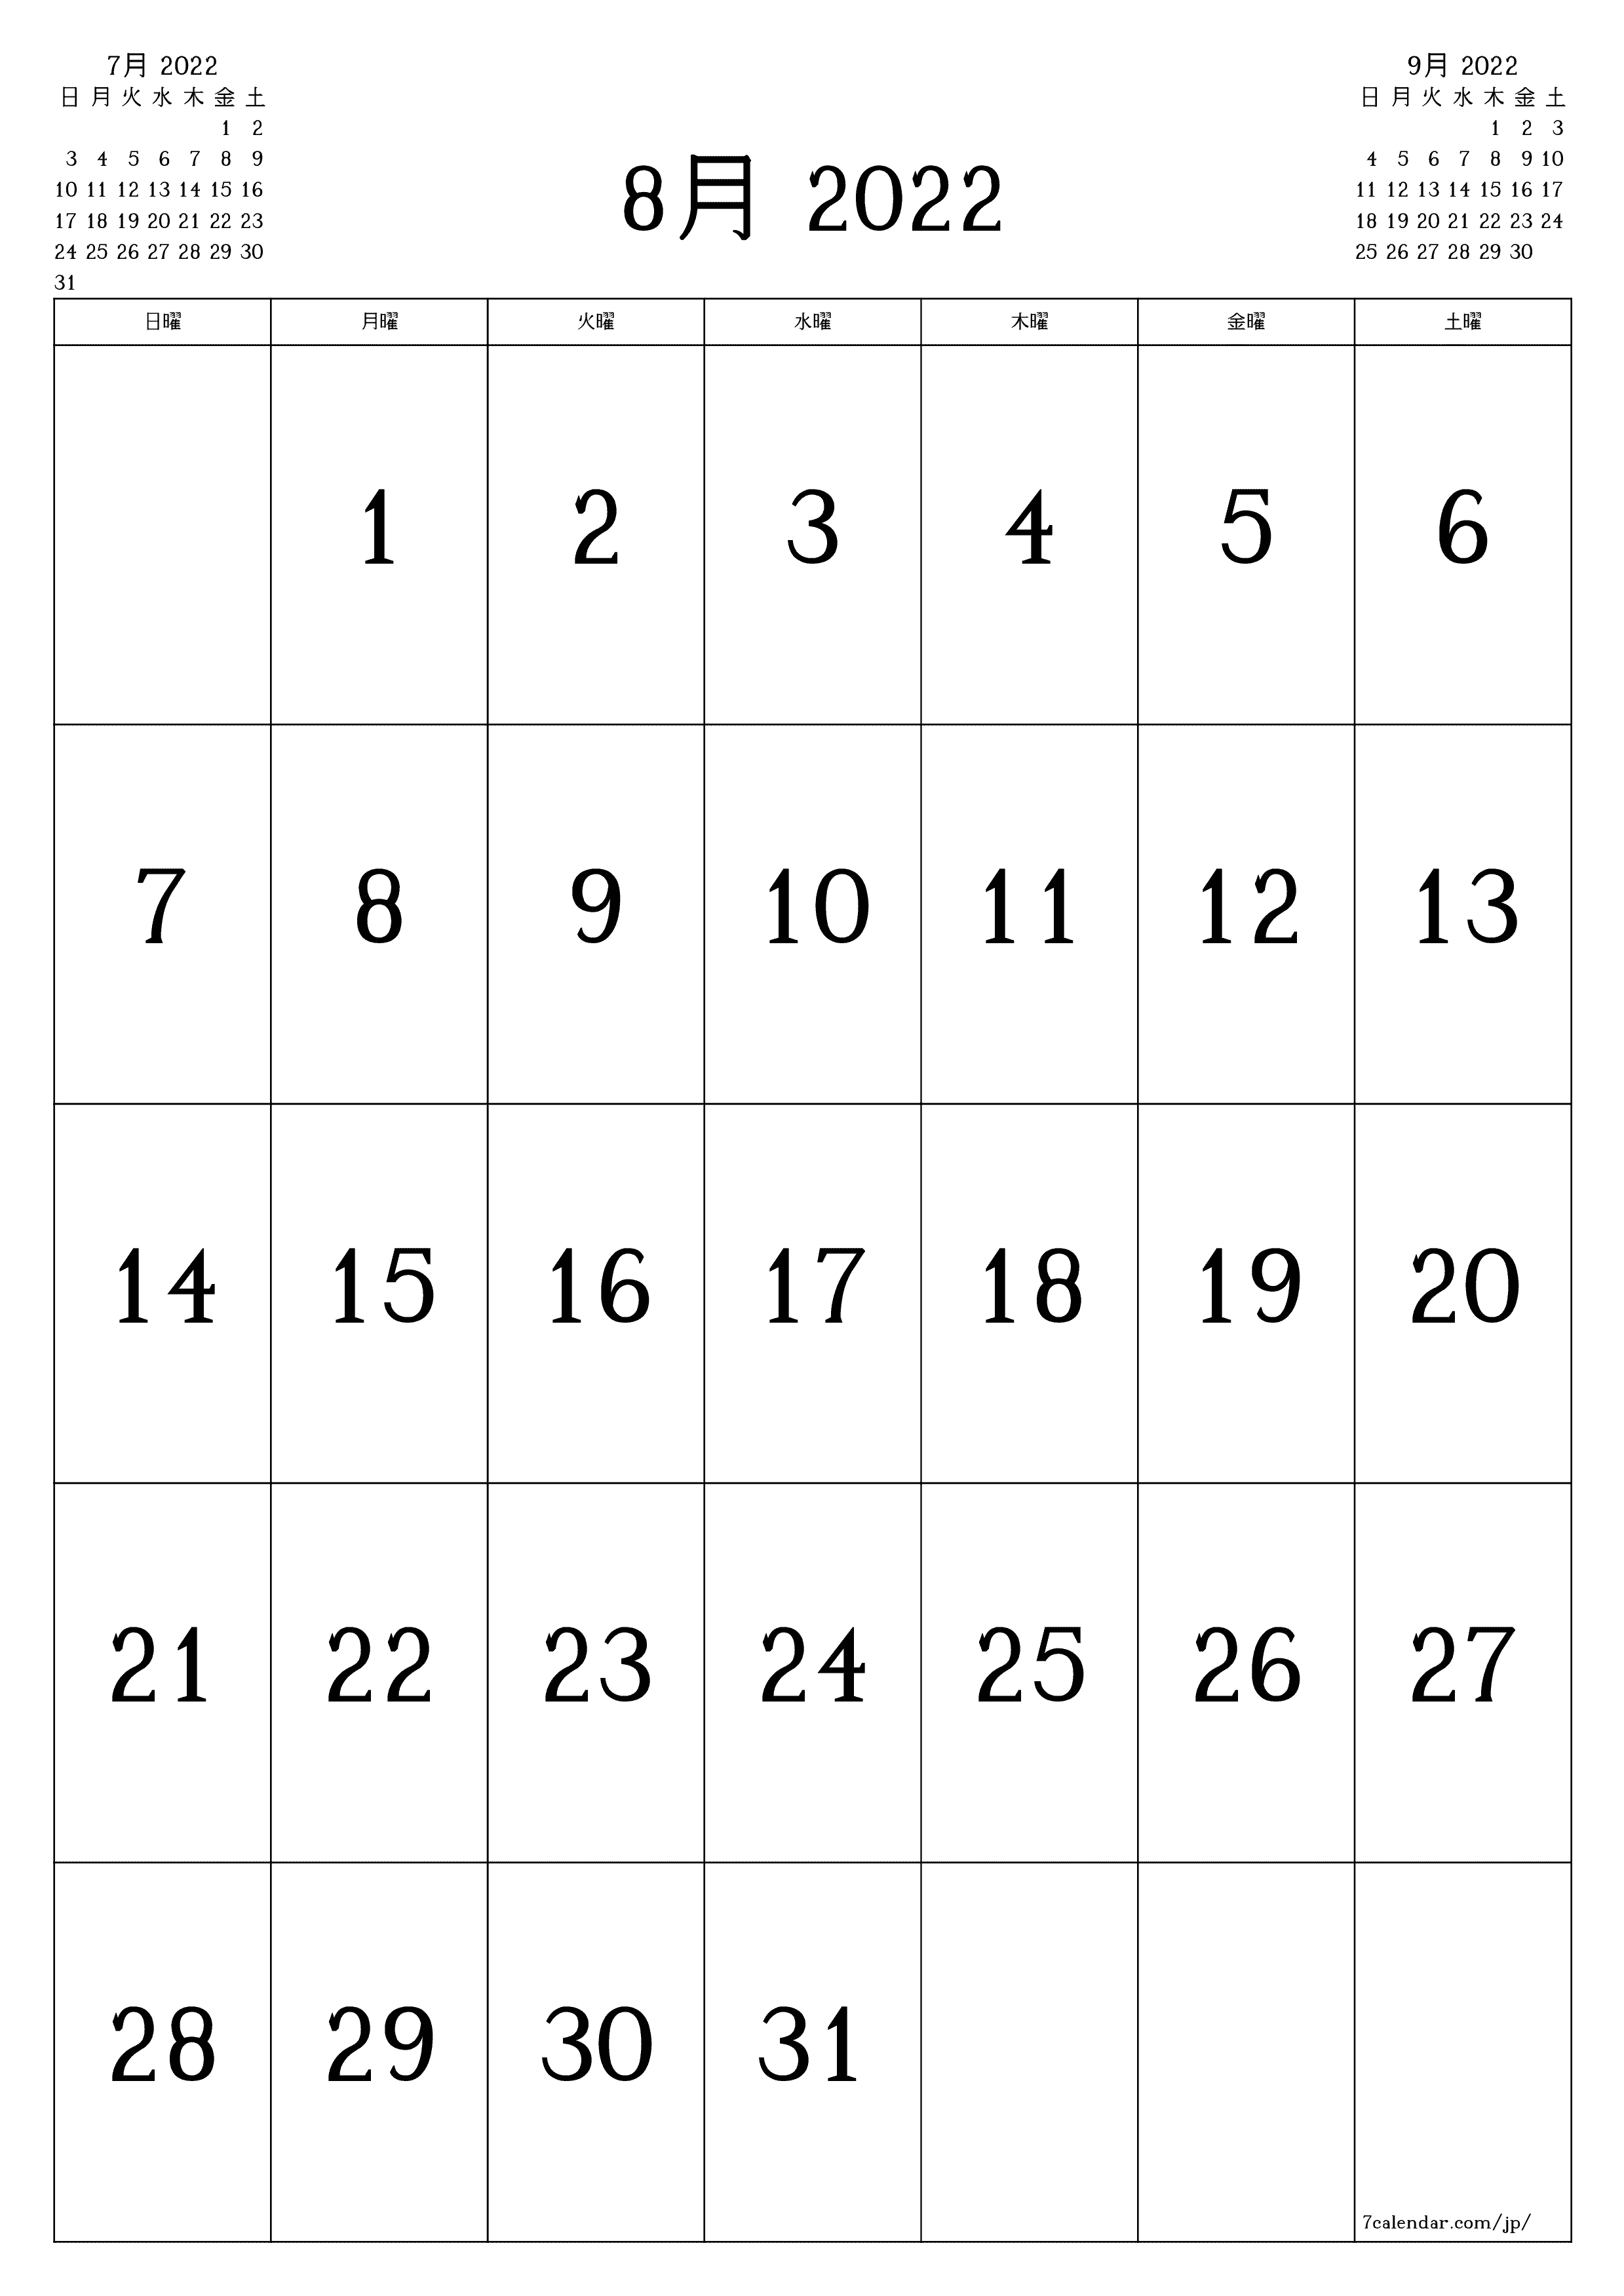 月の空白の月間カレンダー8月2022保存してPDFに印刷PNG Japanese - 7calendar.com